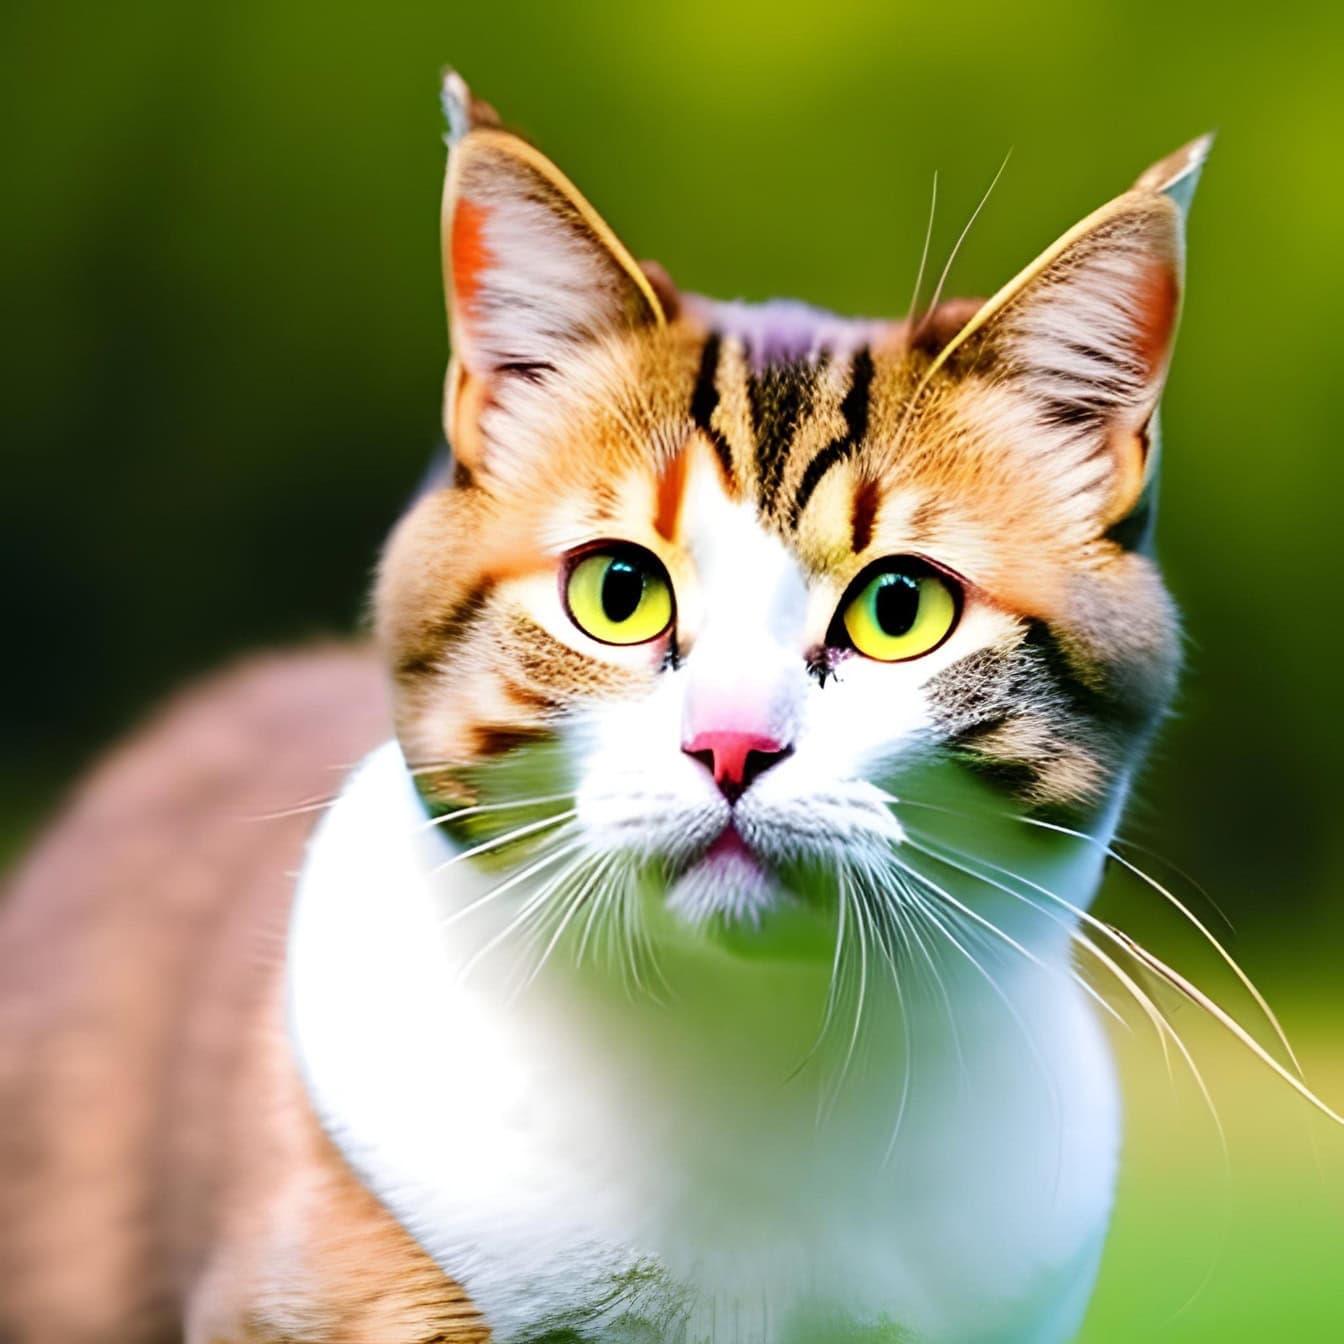 一只黄褐色的猫的图形，眼睛是黄绿色的